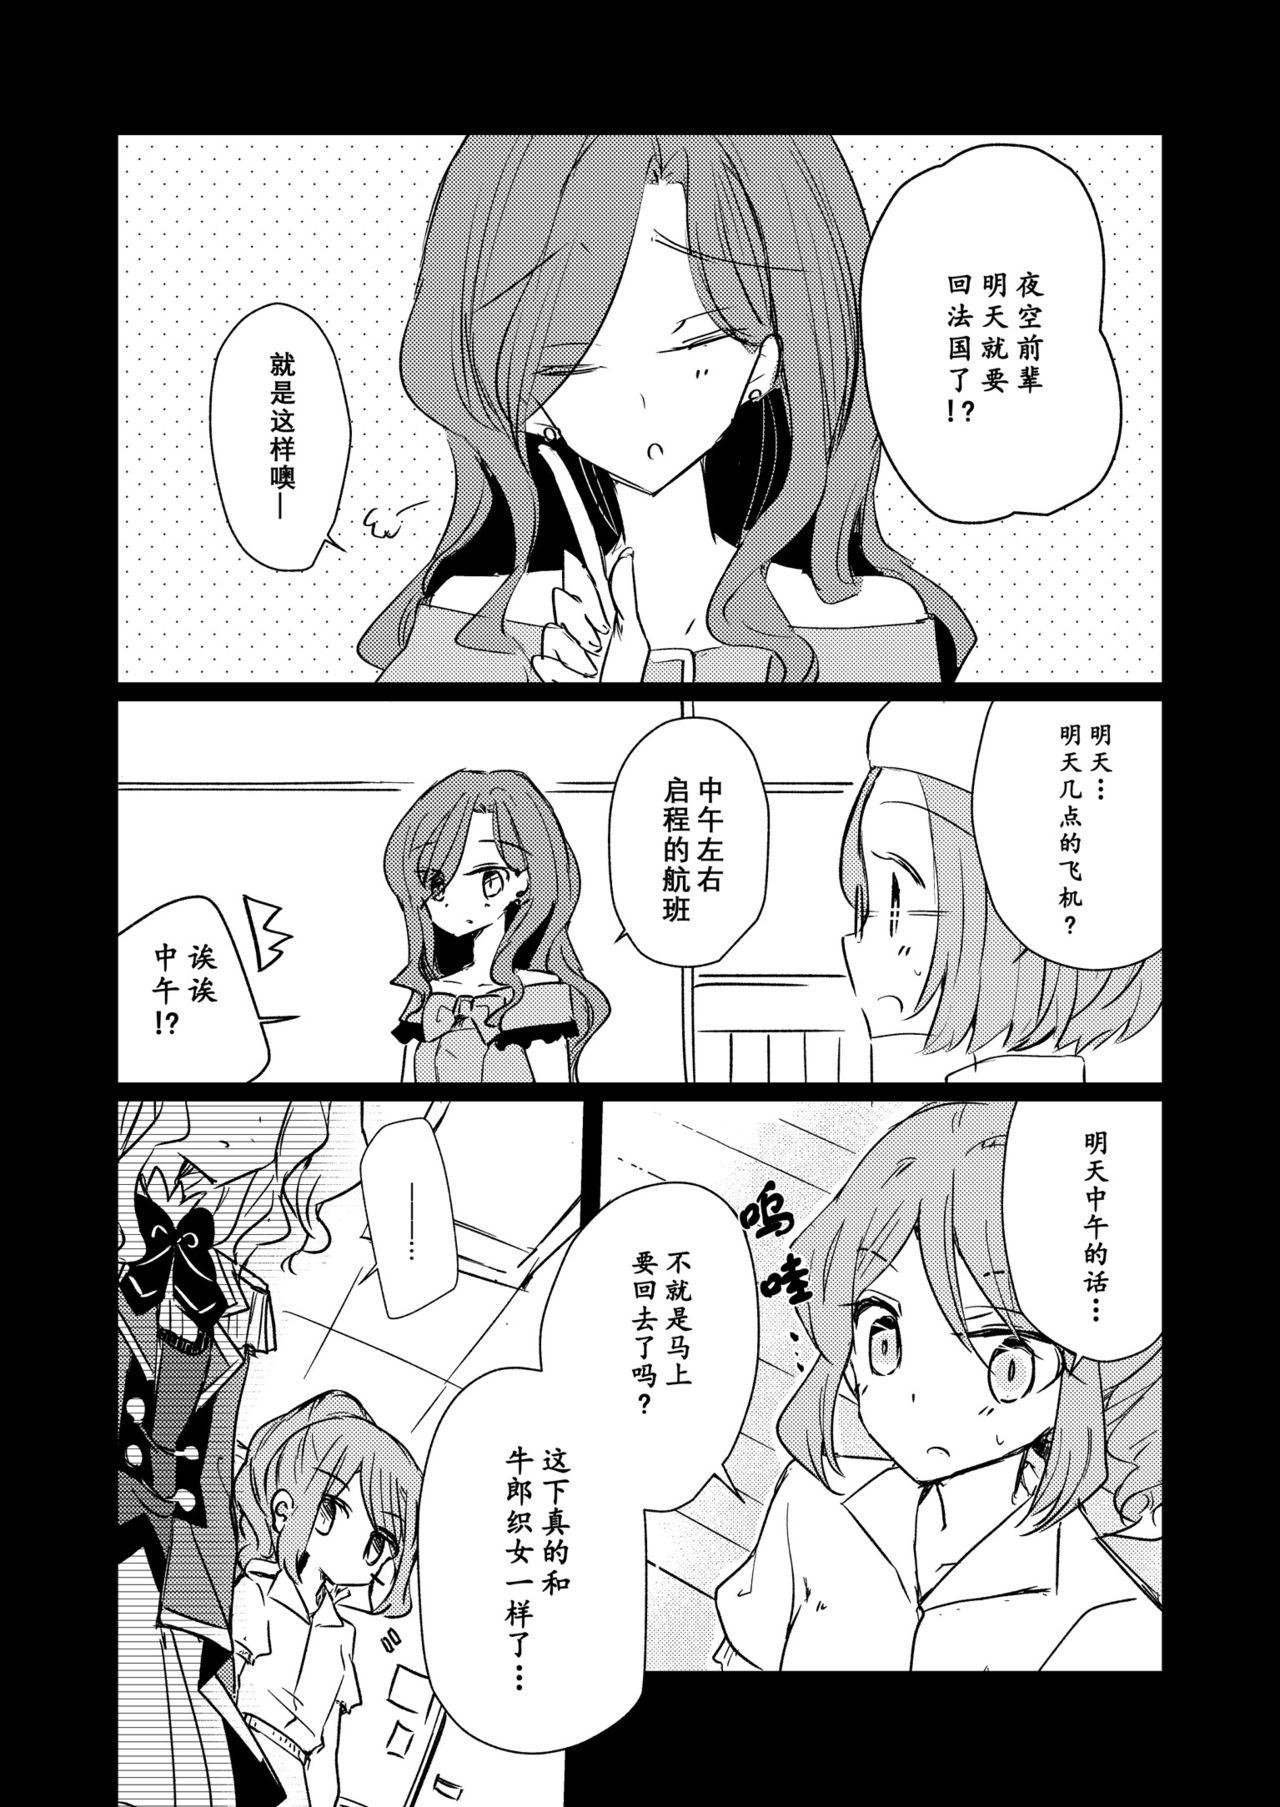 Shemale Dear My Lover - Aikatsu 8teen - Page 4